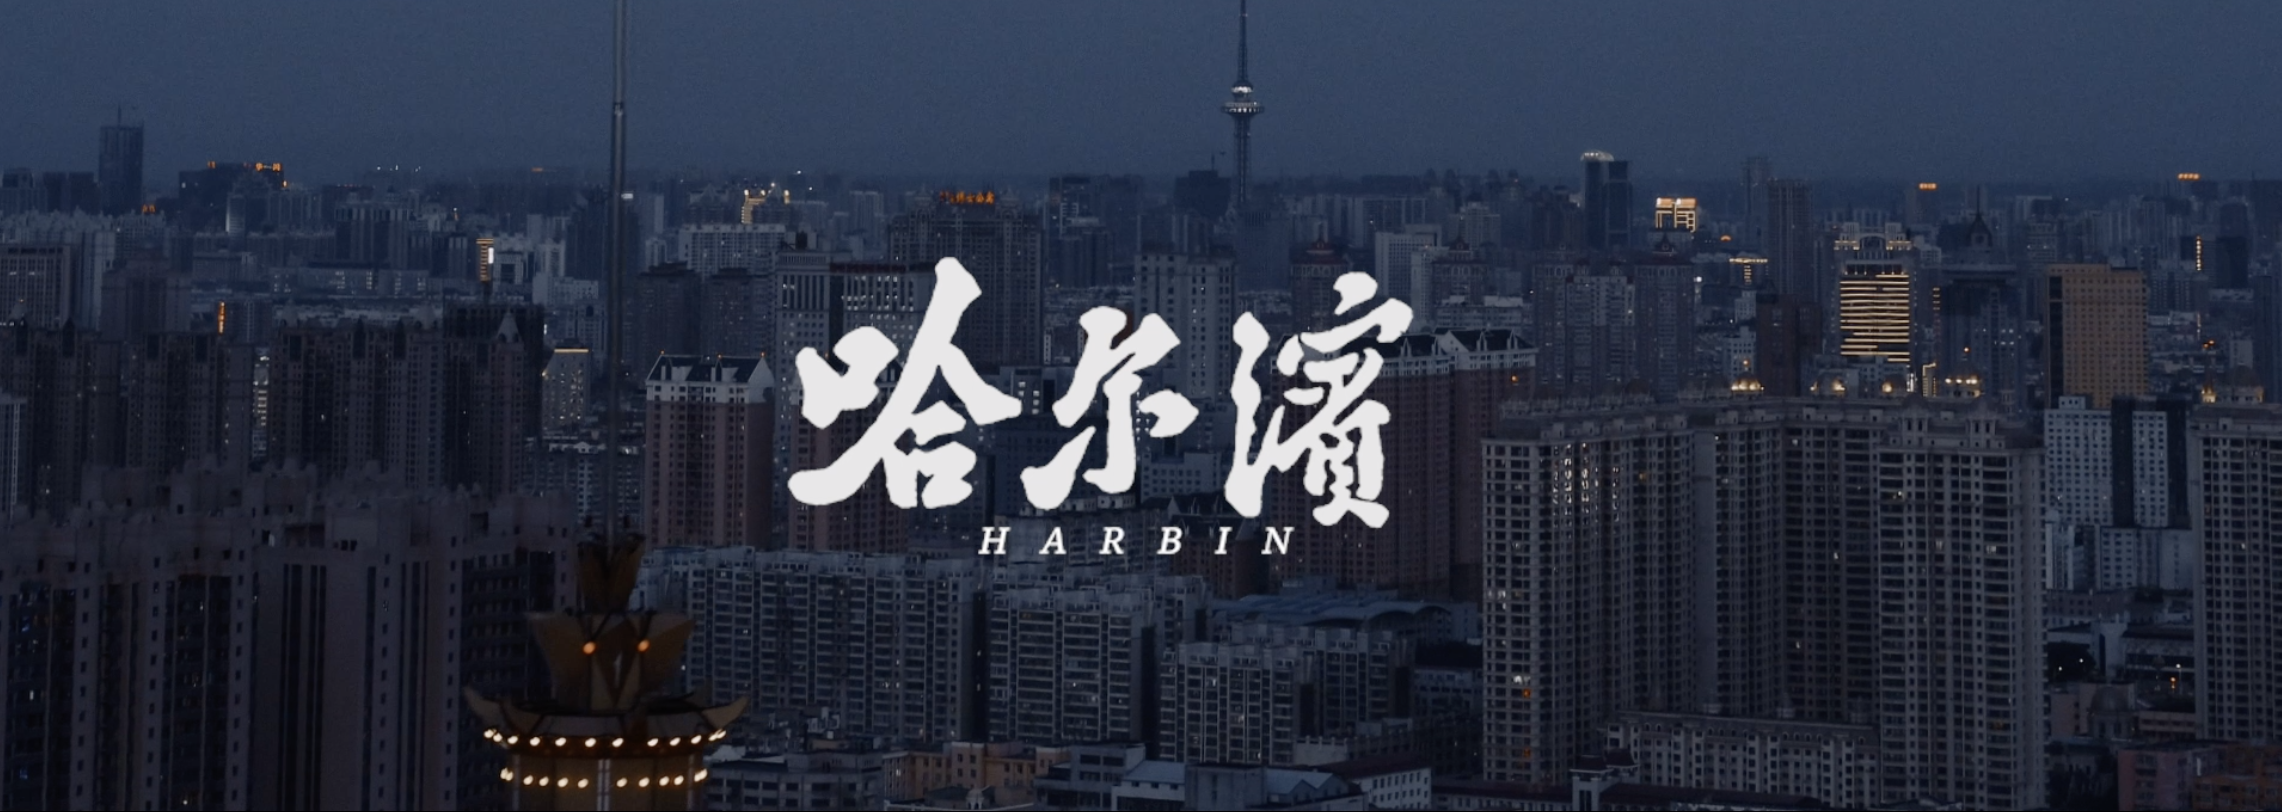 哈尔滨 - 《 2019城市宣传片》